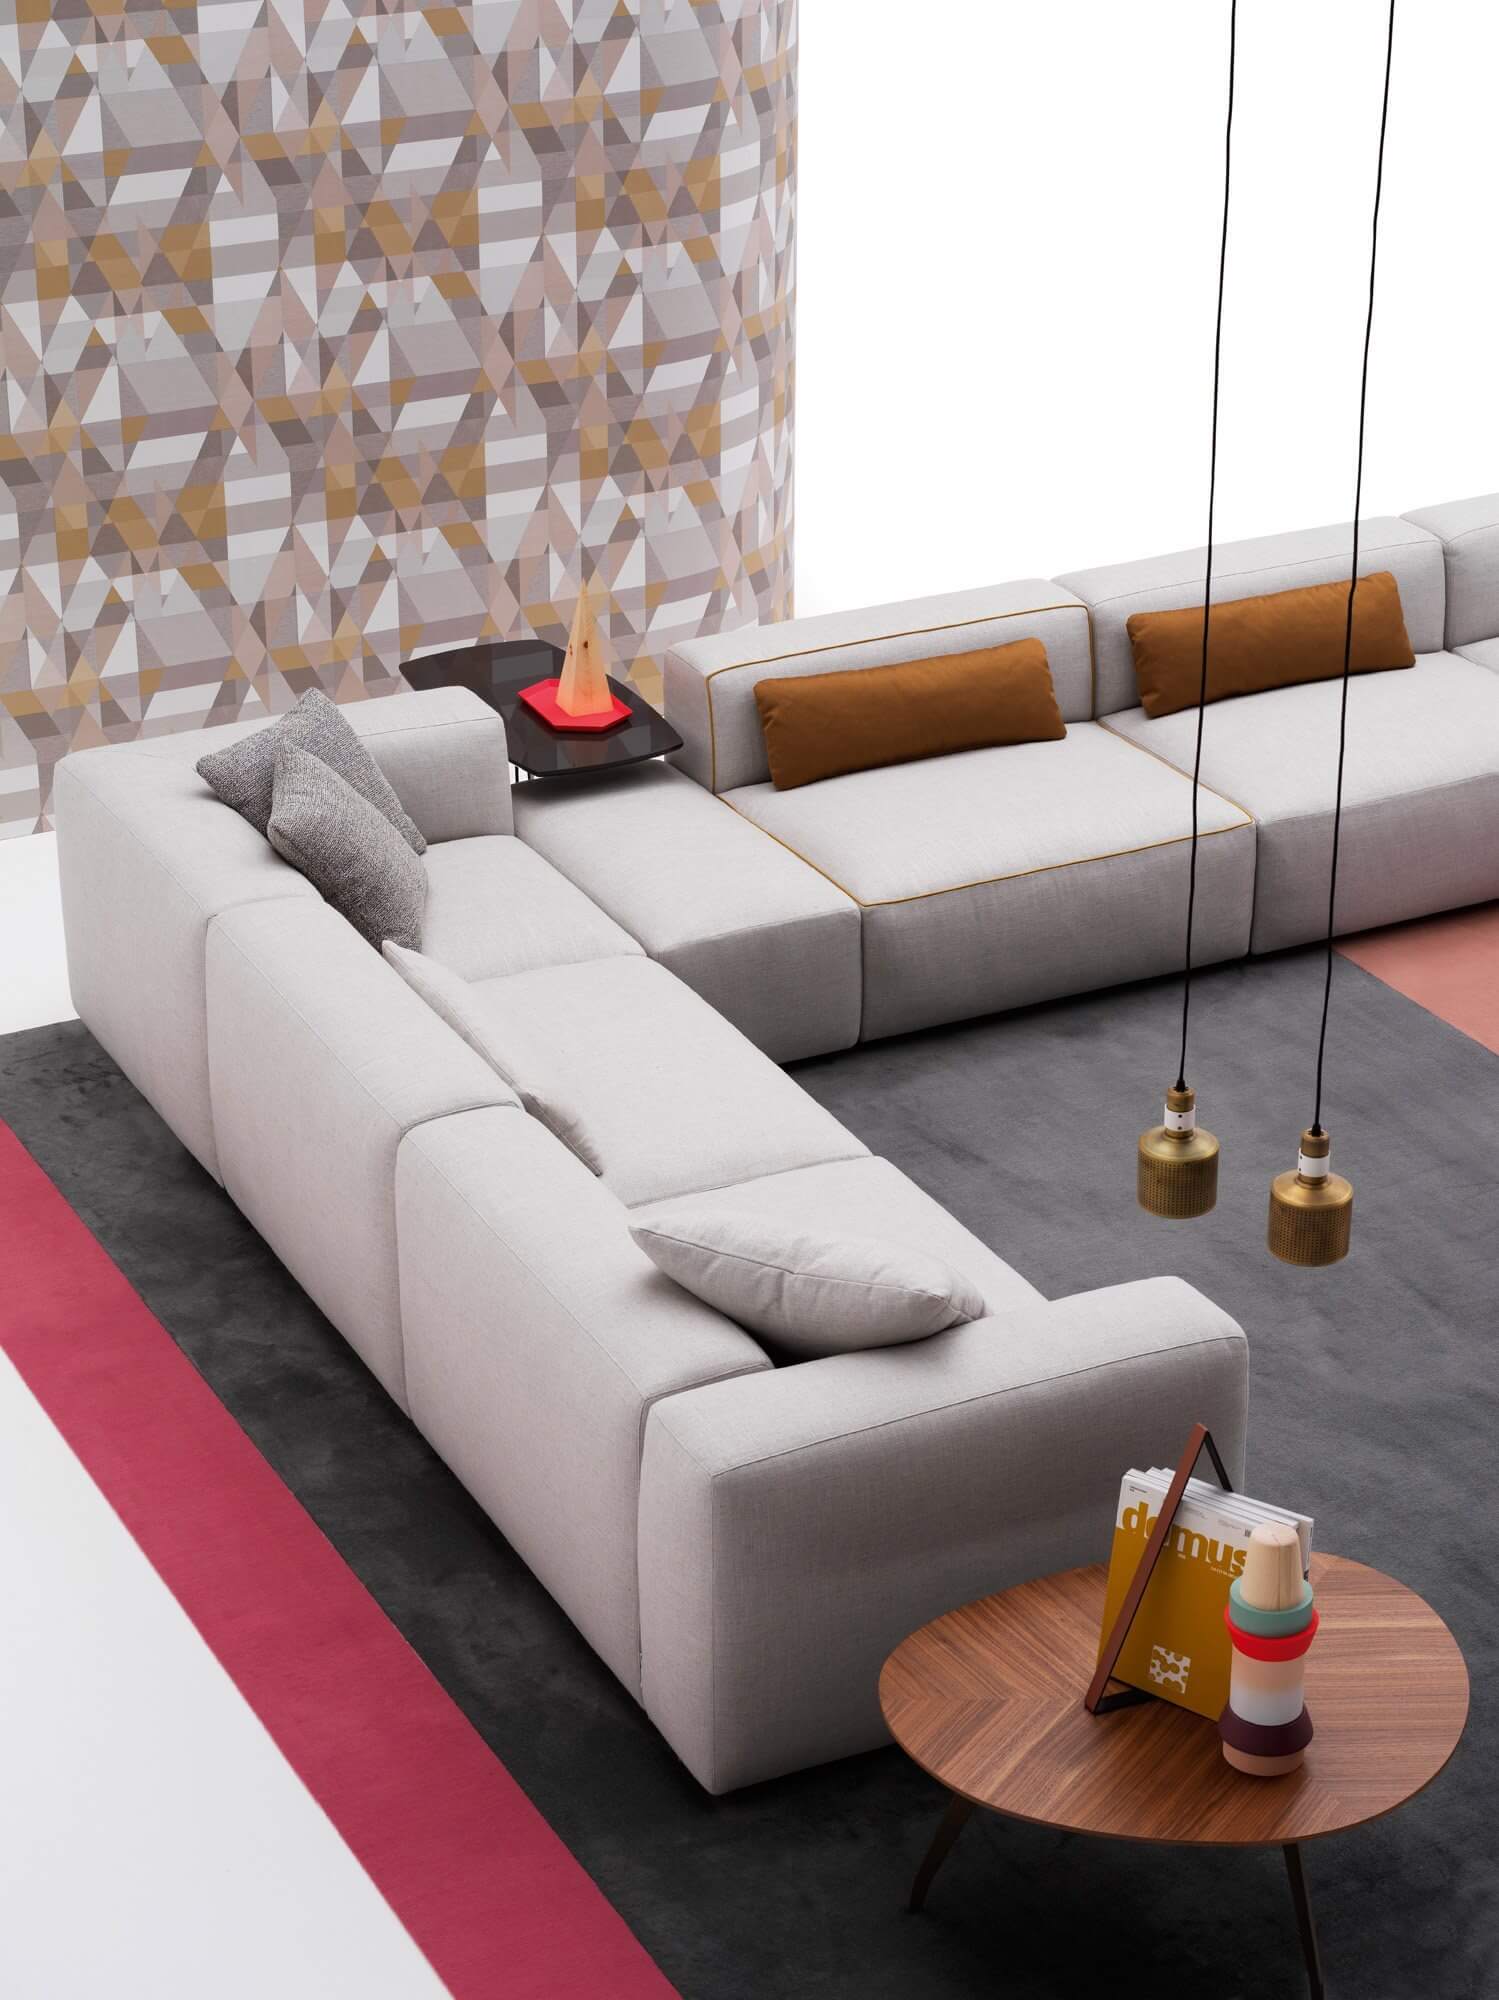 Az Alcazar design kanapé a moduláris kanapé világos színben hatalmas méretben felülről